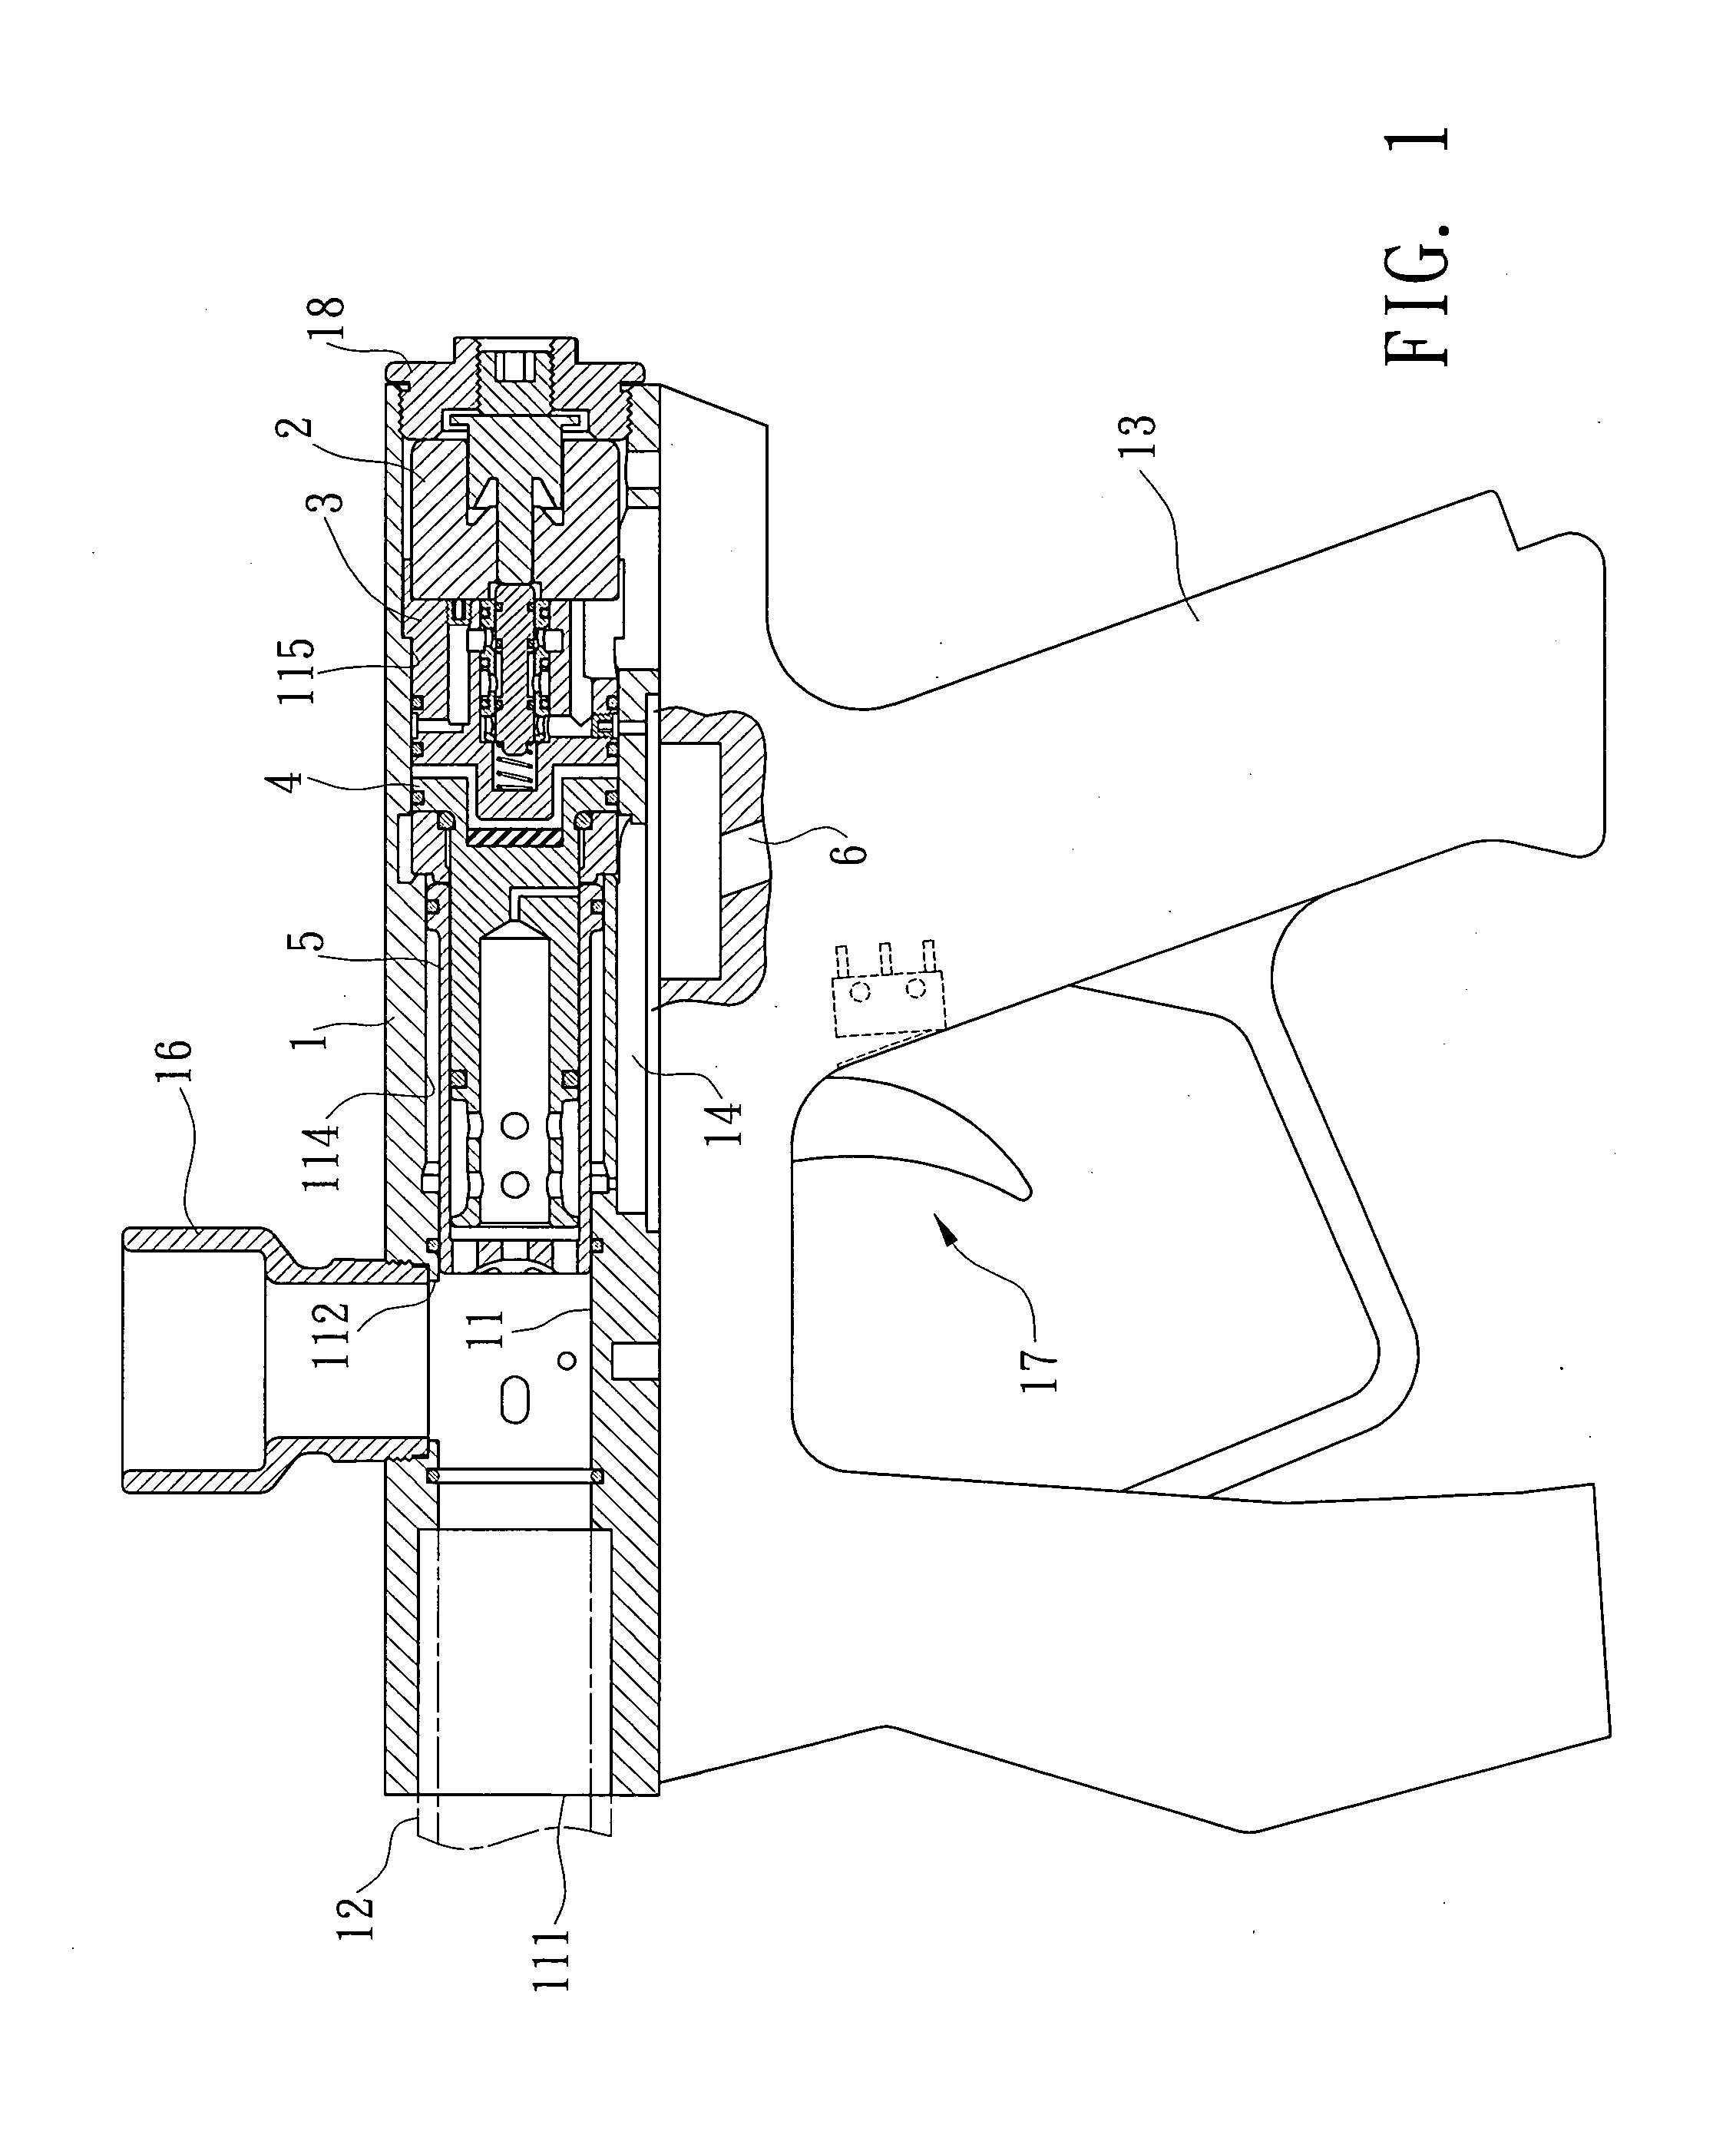 Firing mechanism for paintball gun